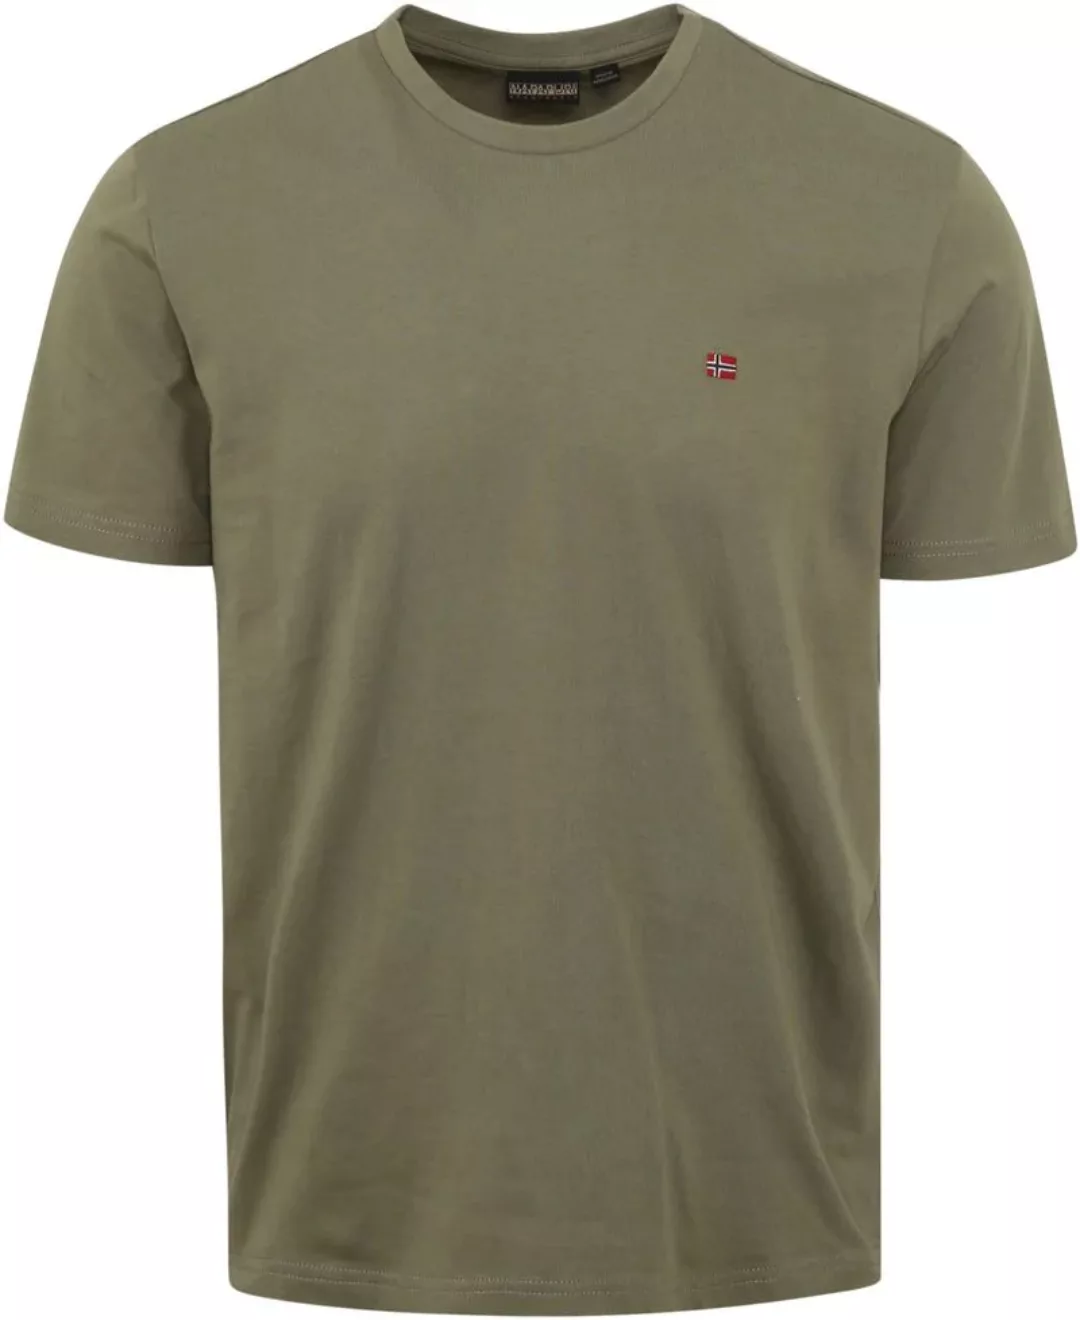 Napapijri Salis T-shirt Grün - Größe M günstig online kaufen